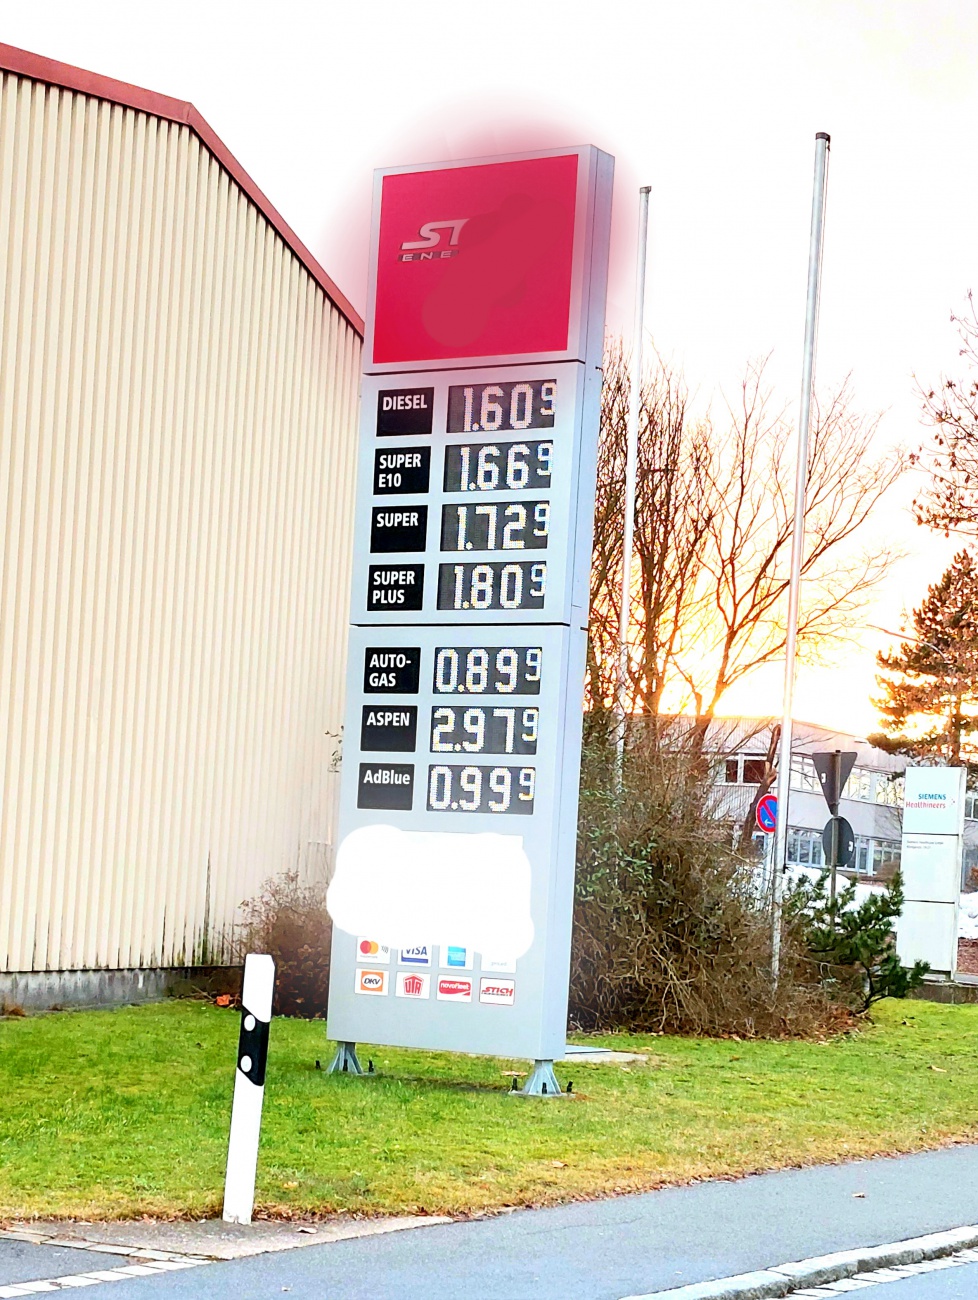 Foto: Martin Zehrer - Benzinpreise am 5. Februar 2022 in Kemnath 